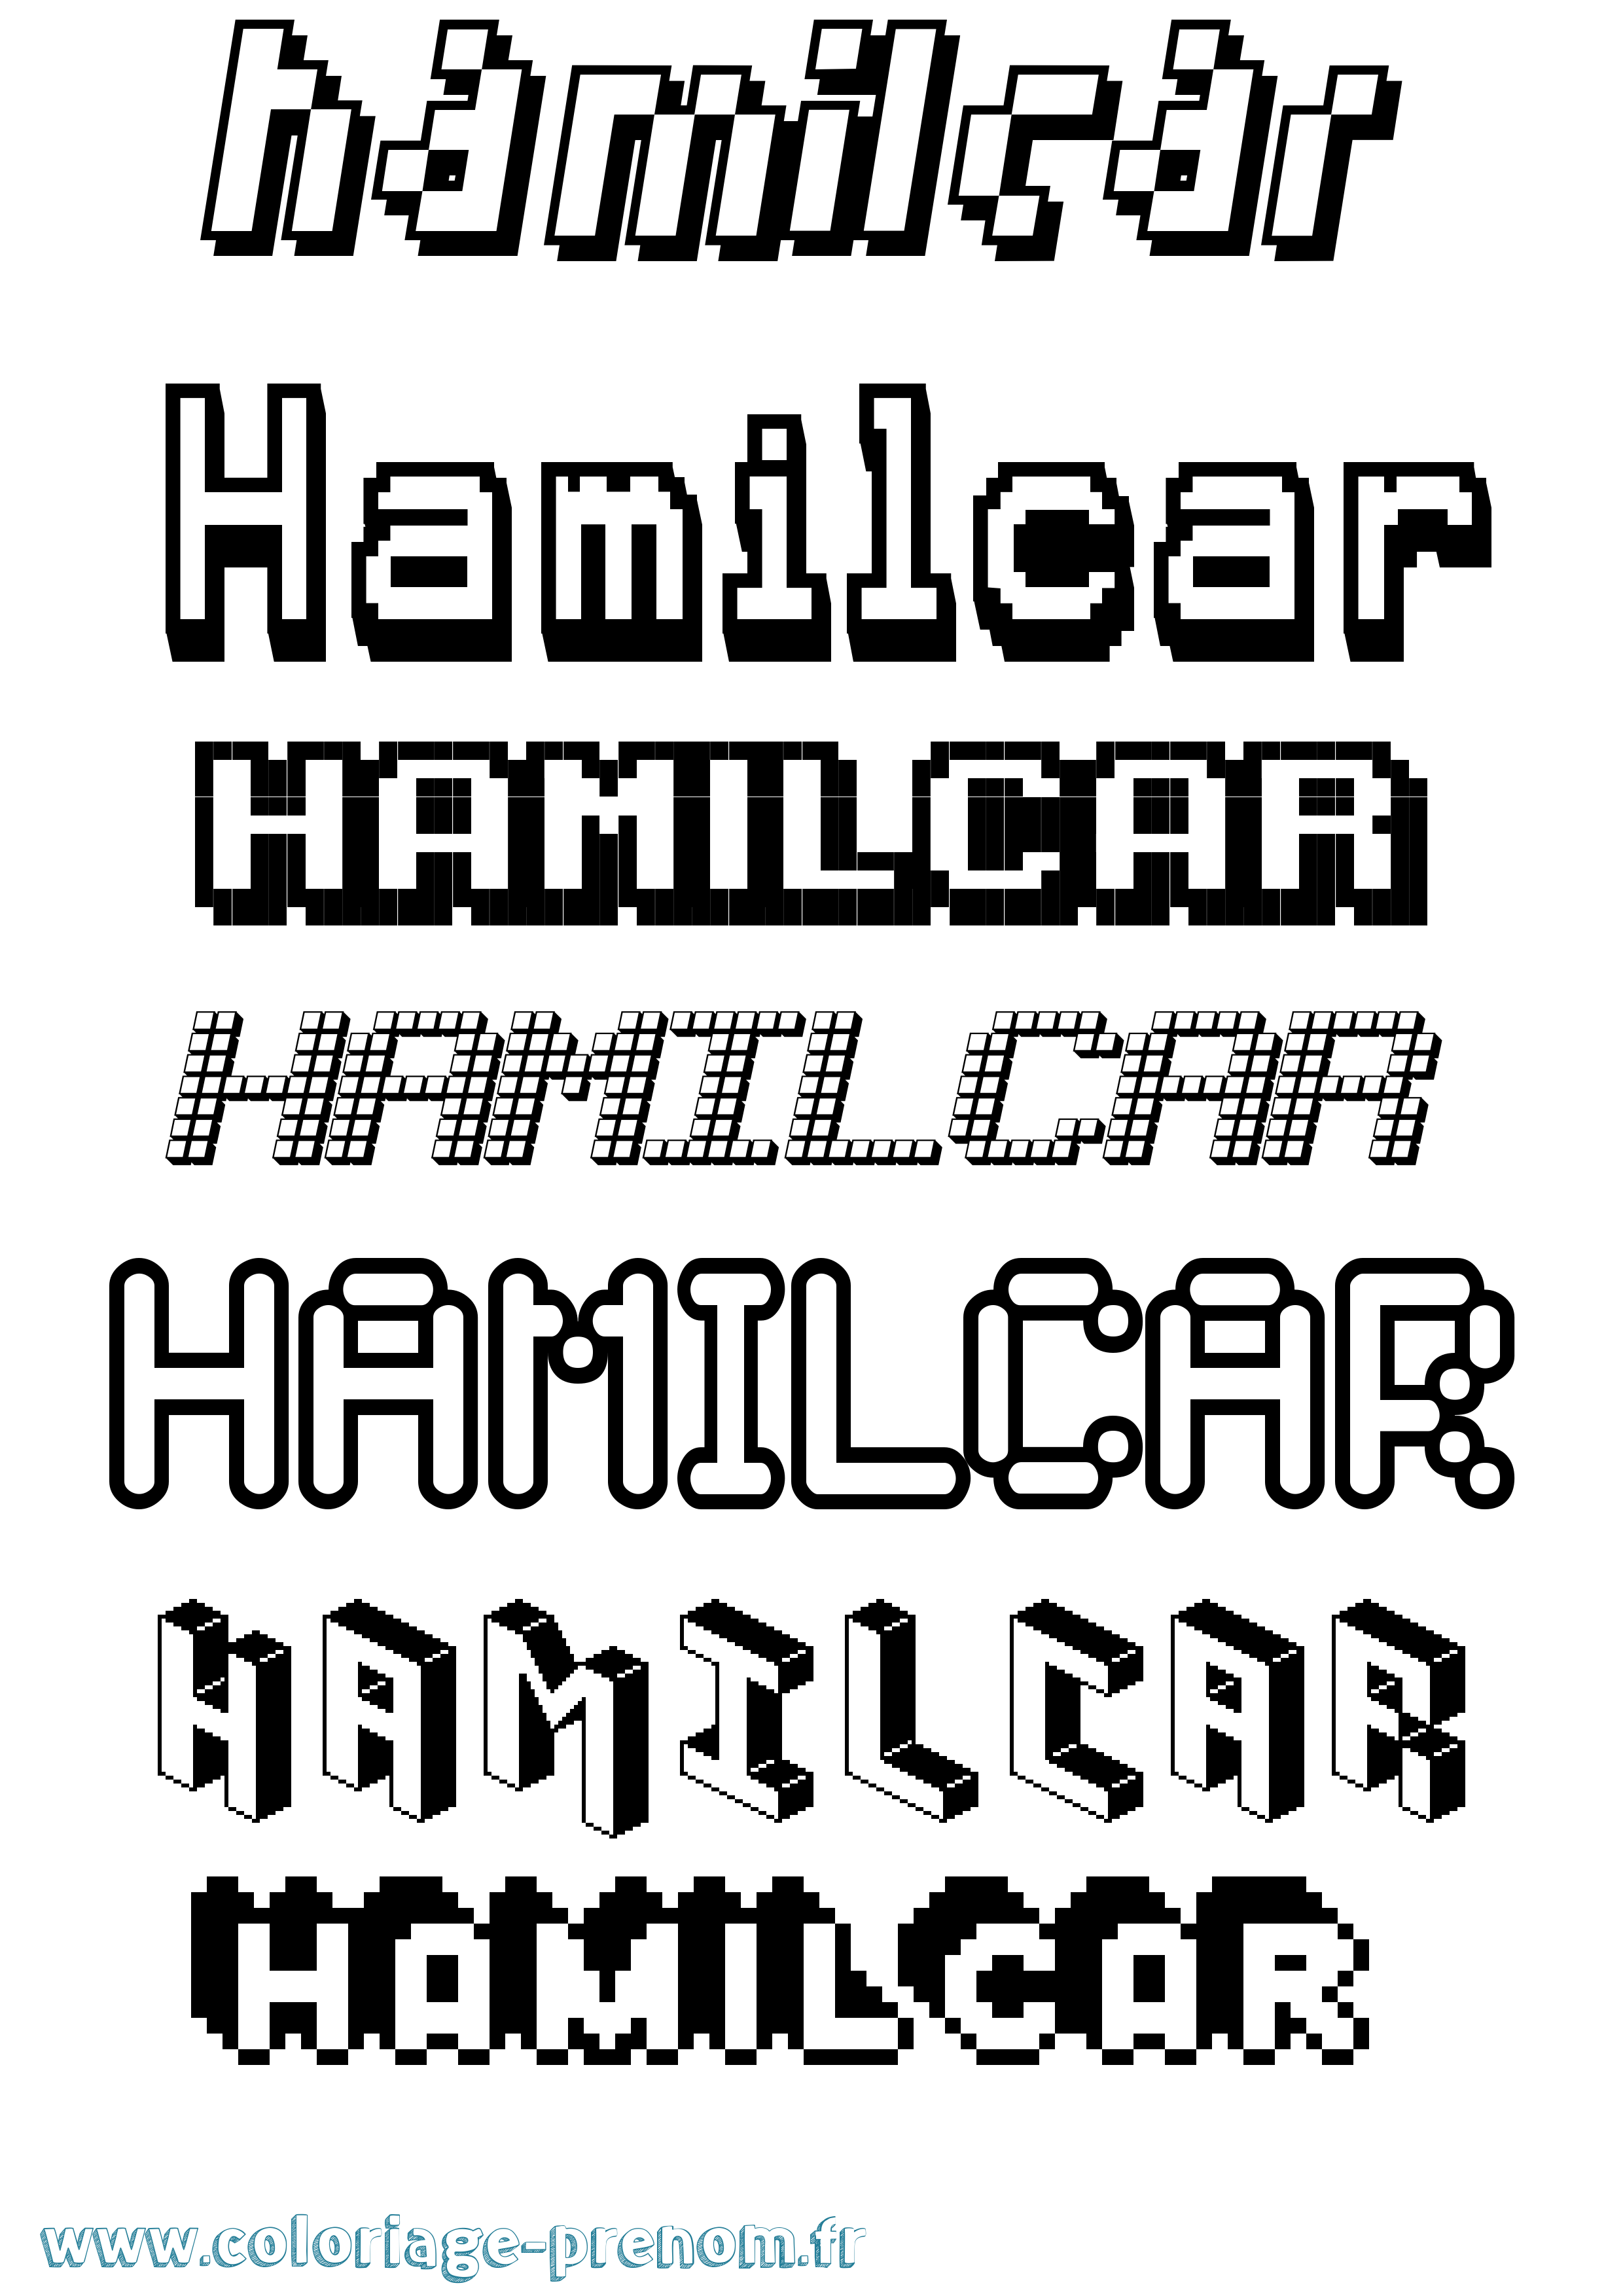 Coloriage prénom Hamilcar Pixel